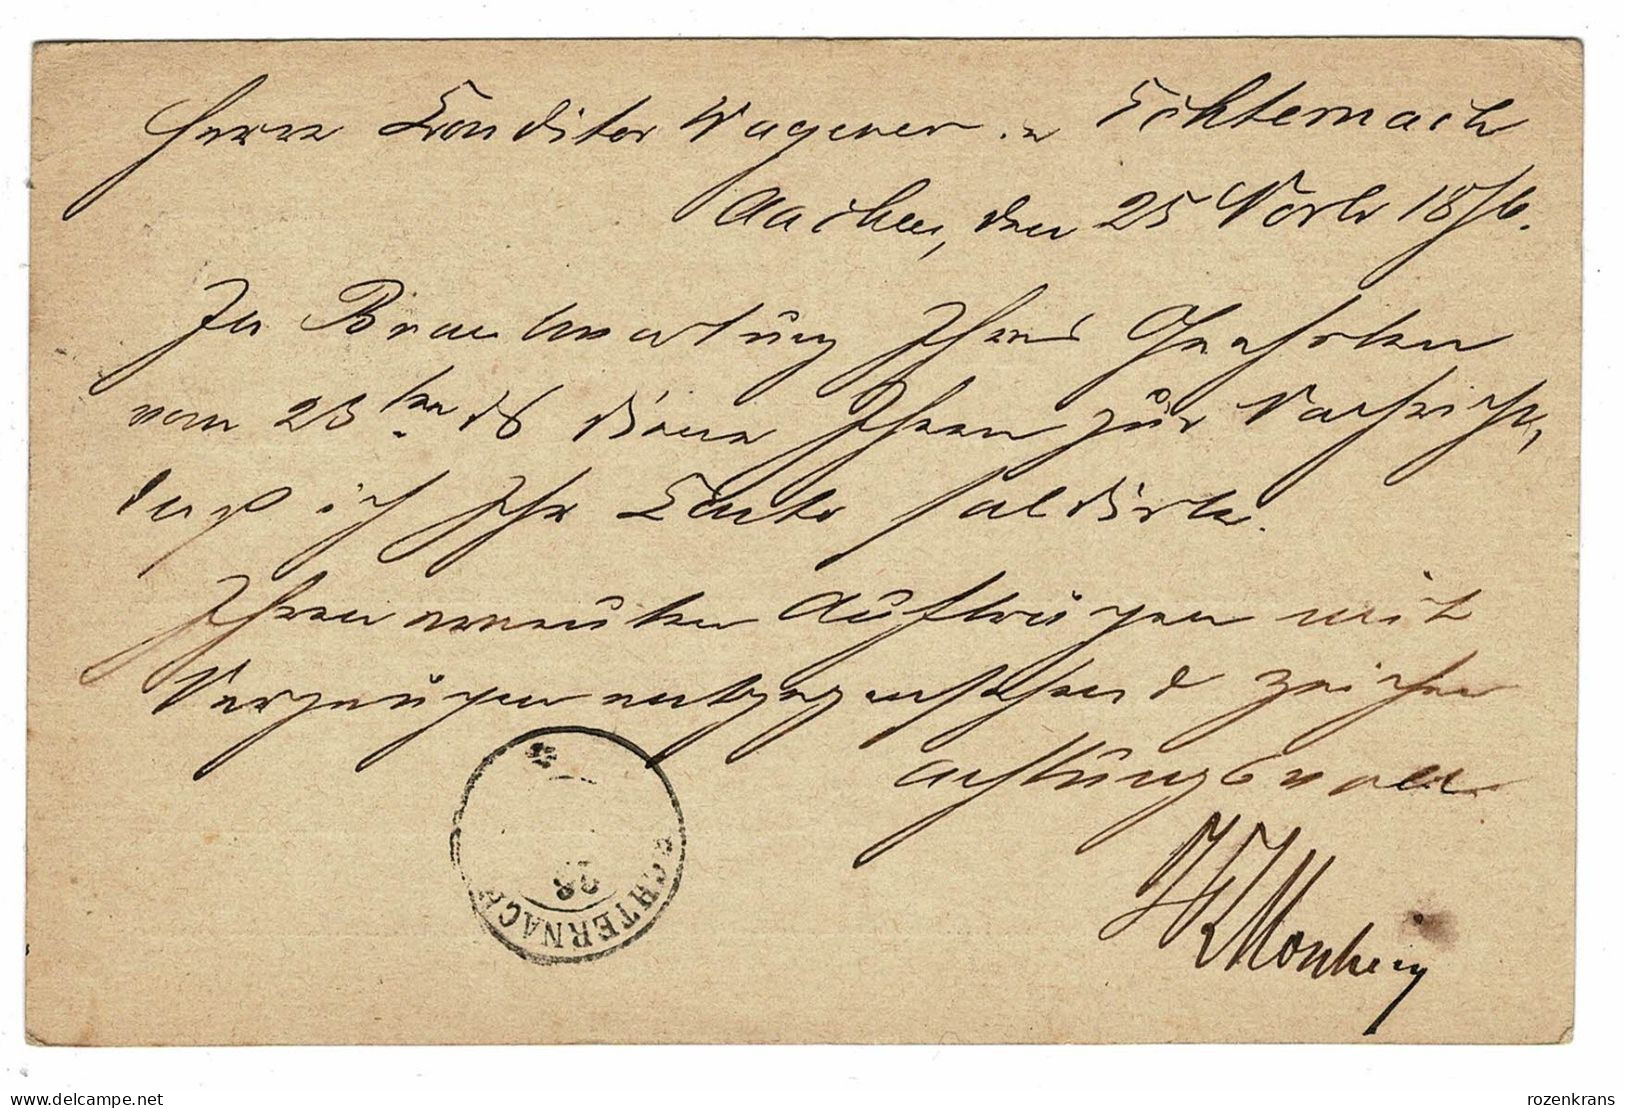 EP E.P. Entier Postale Ganzsache DEUTSCHE REICHSPOST Postkarte AACHEN 1876 5 Funf Pfennige Naar Echternach Luxemburg - Cartes Postales